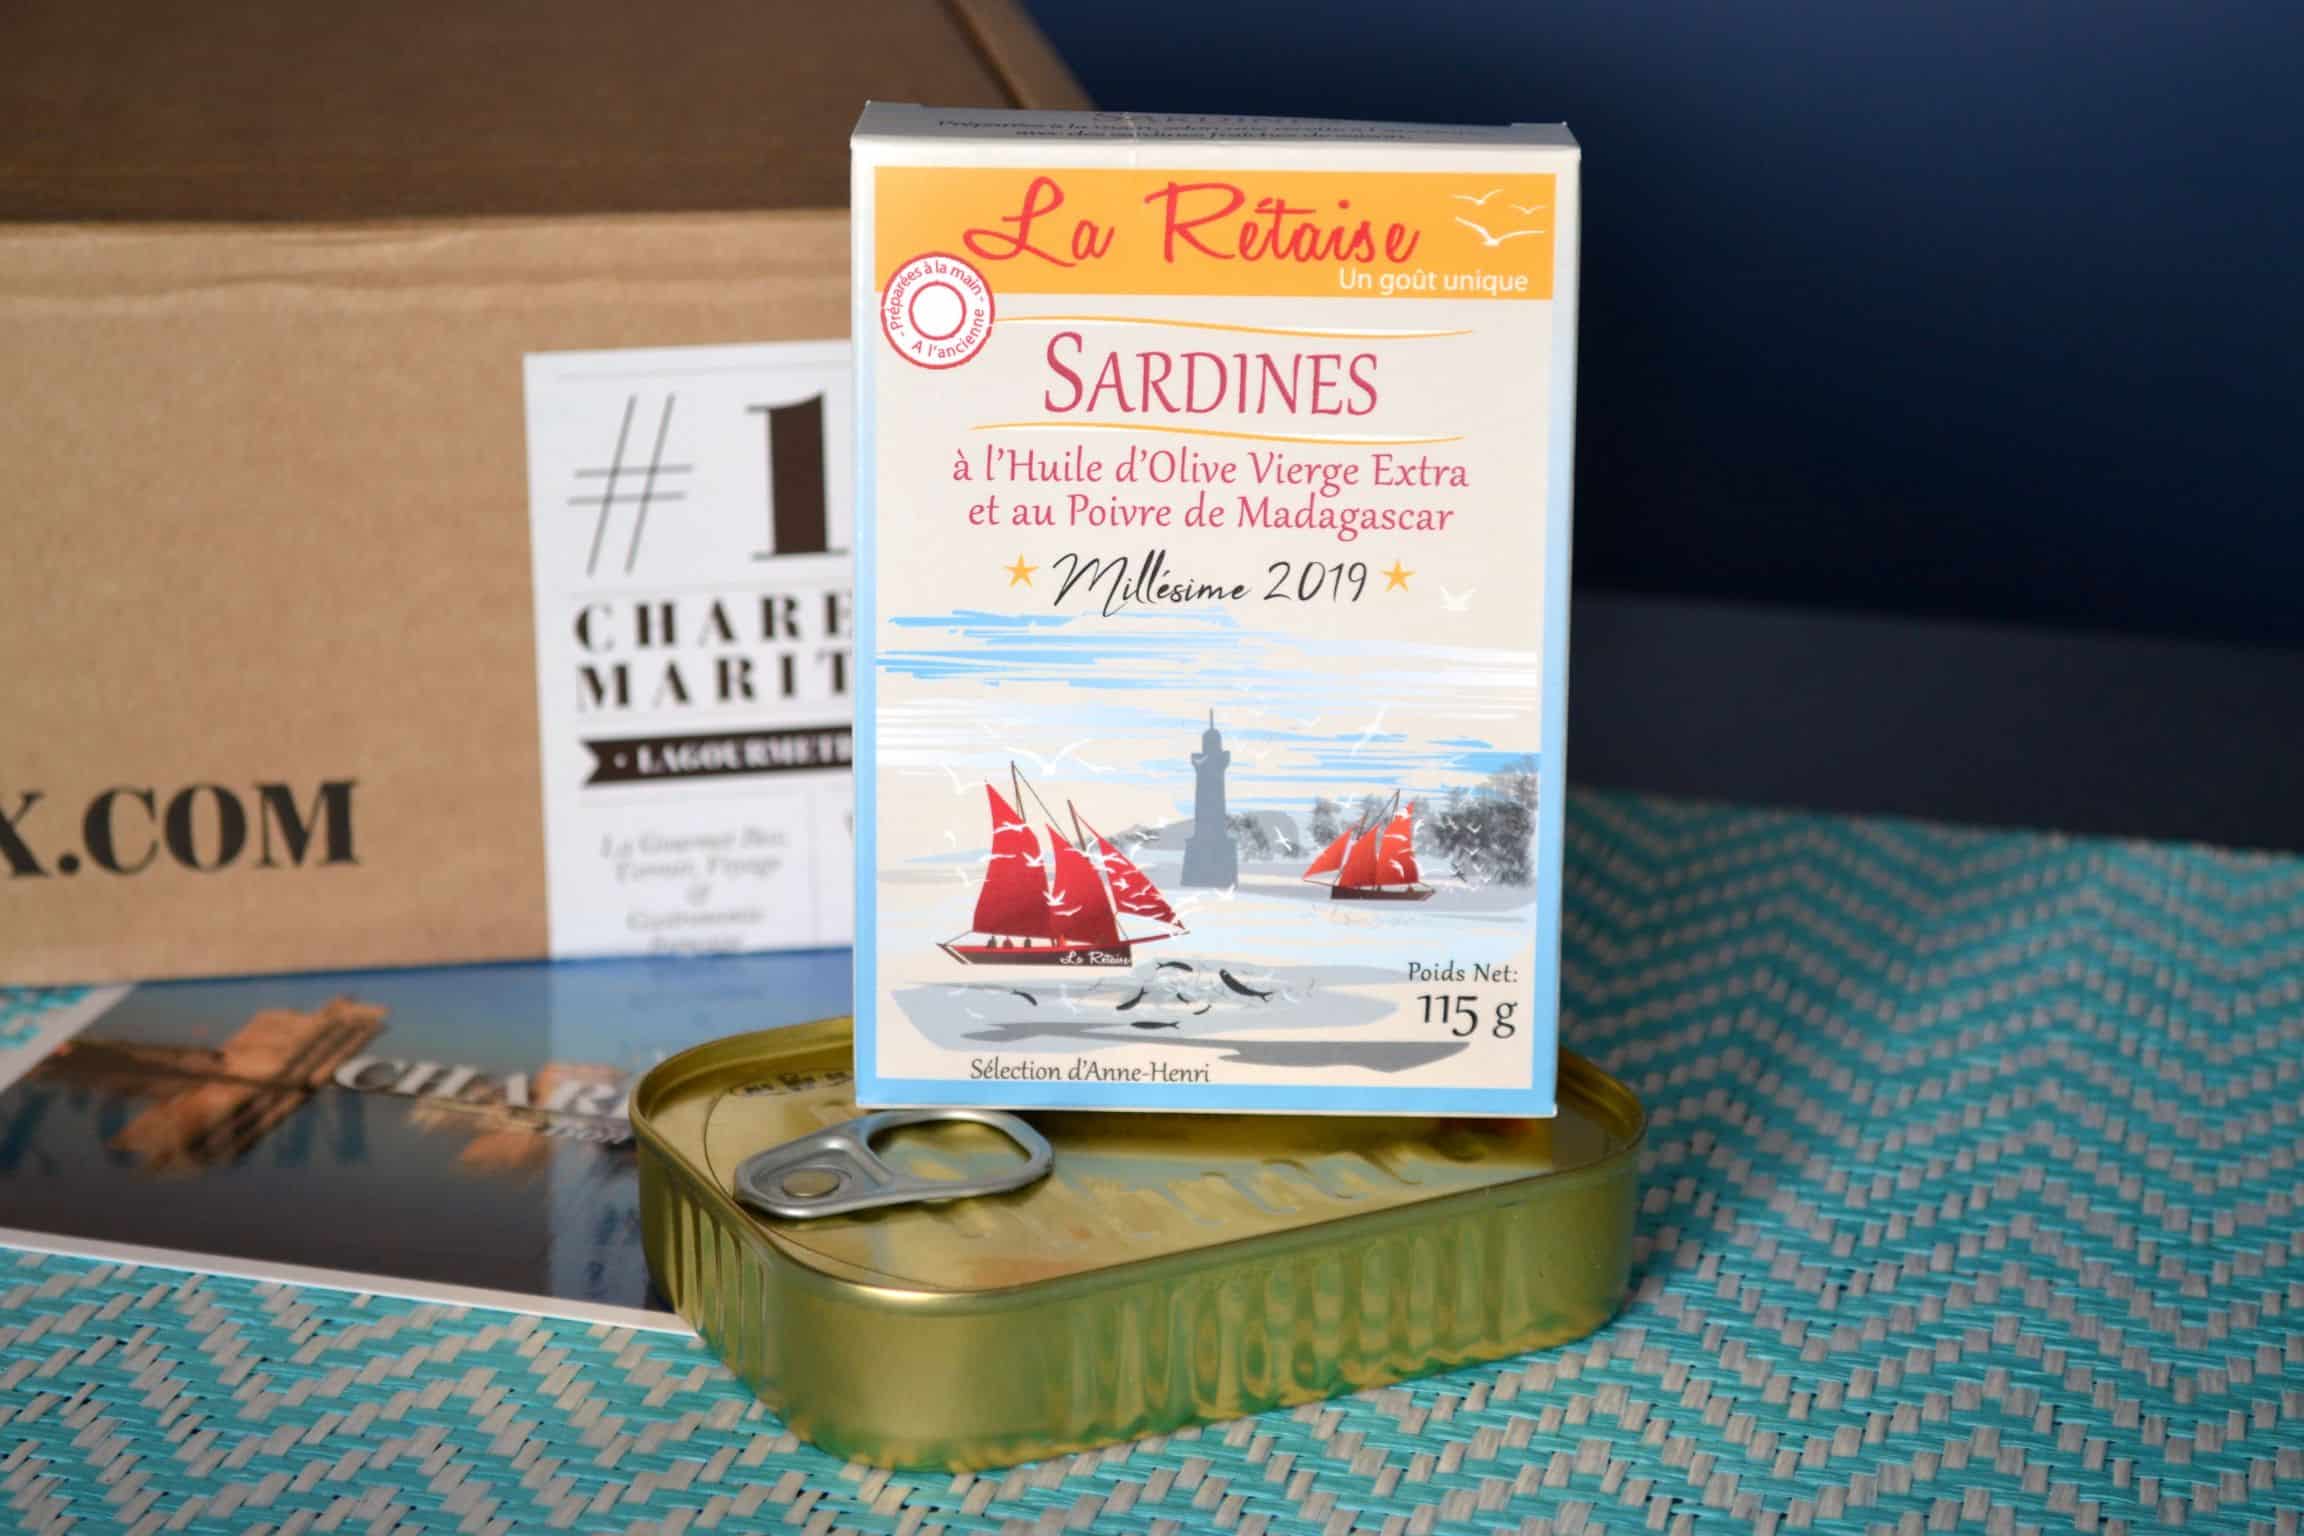 La box de la mer, produits de l'océan Atlantique et les marais salants